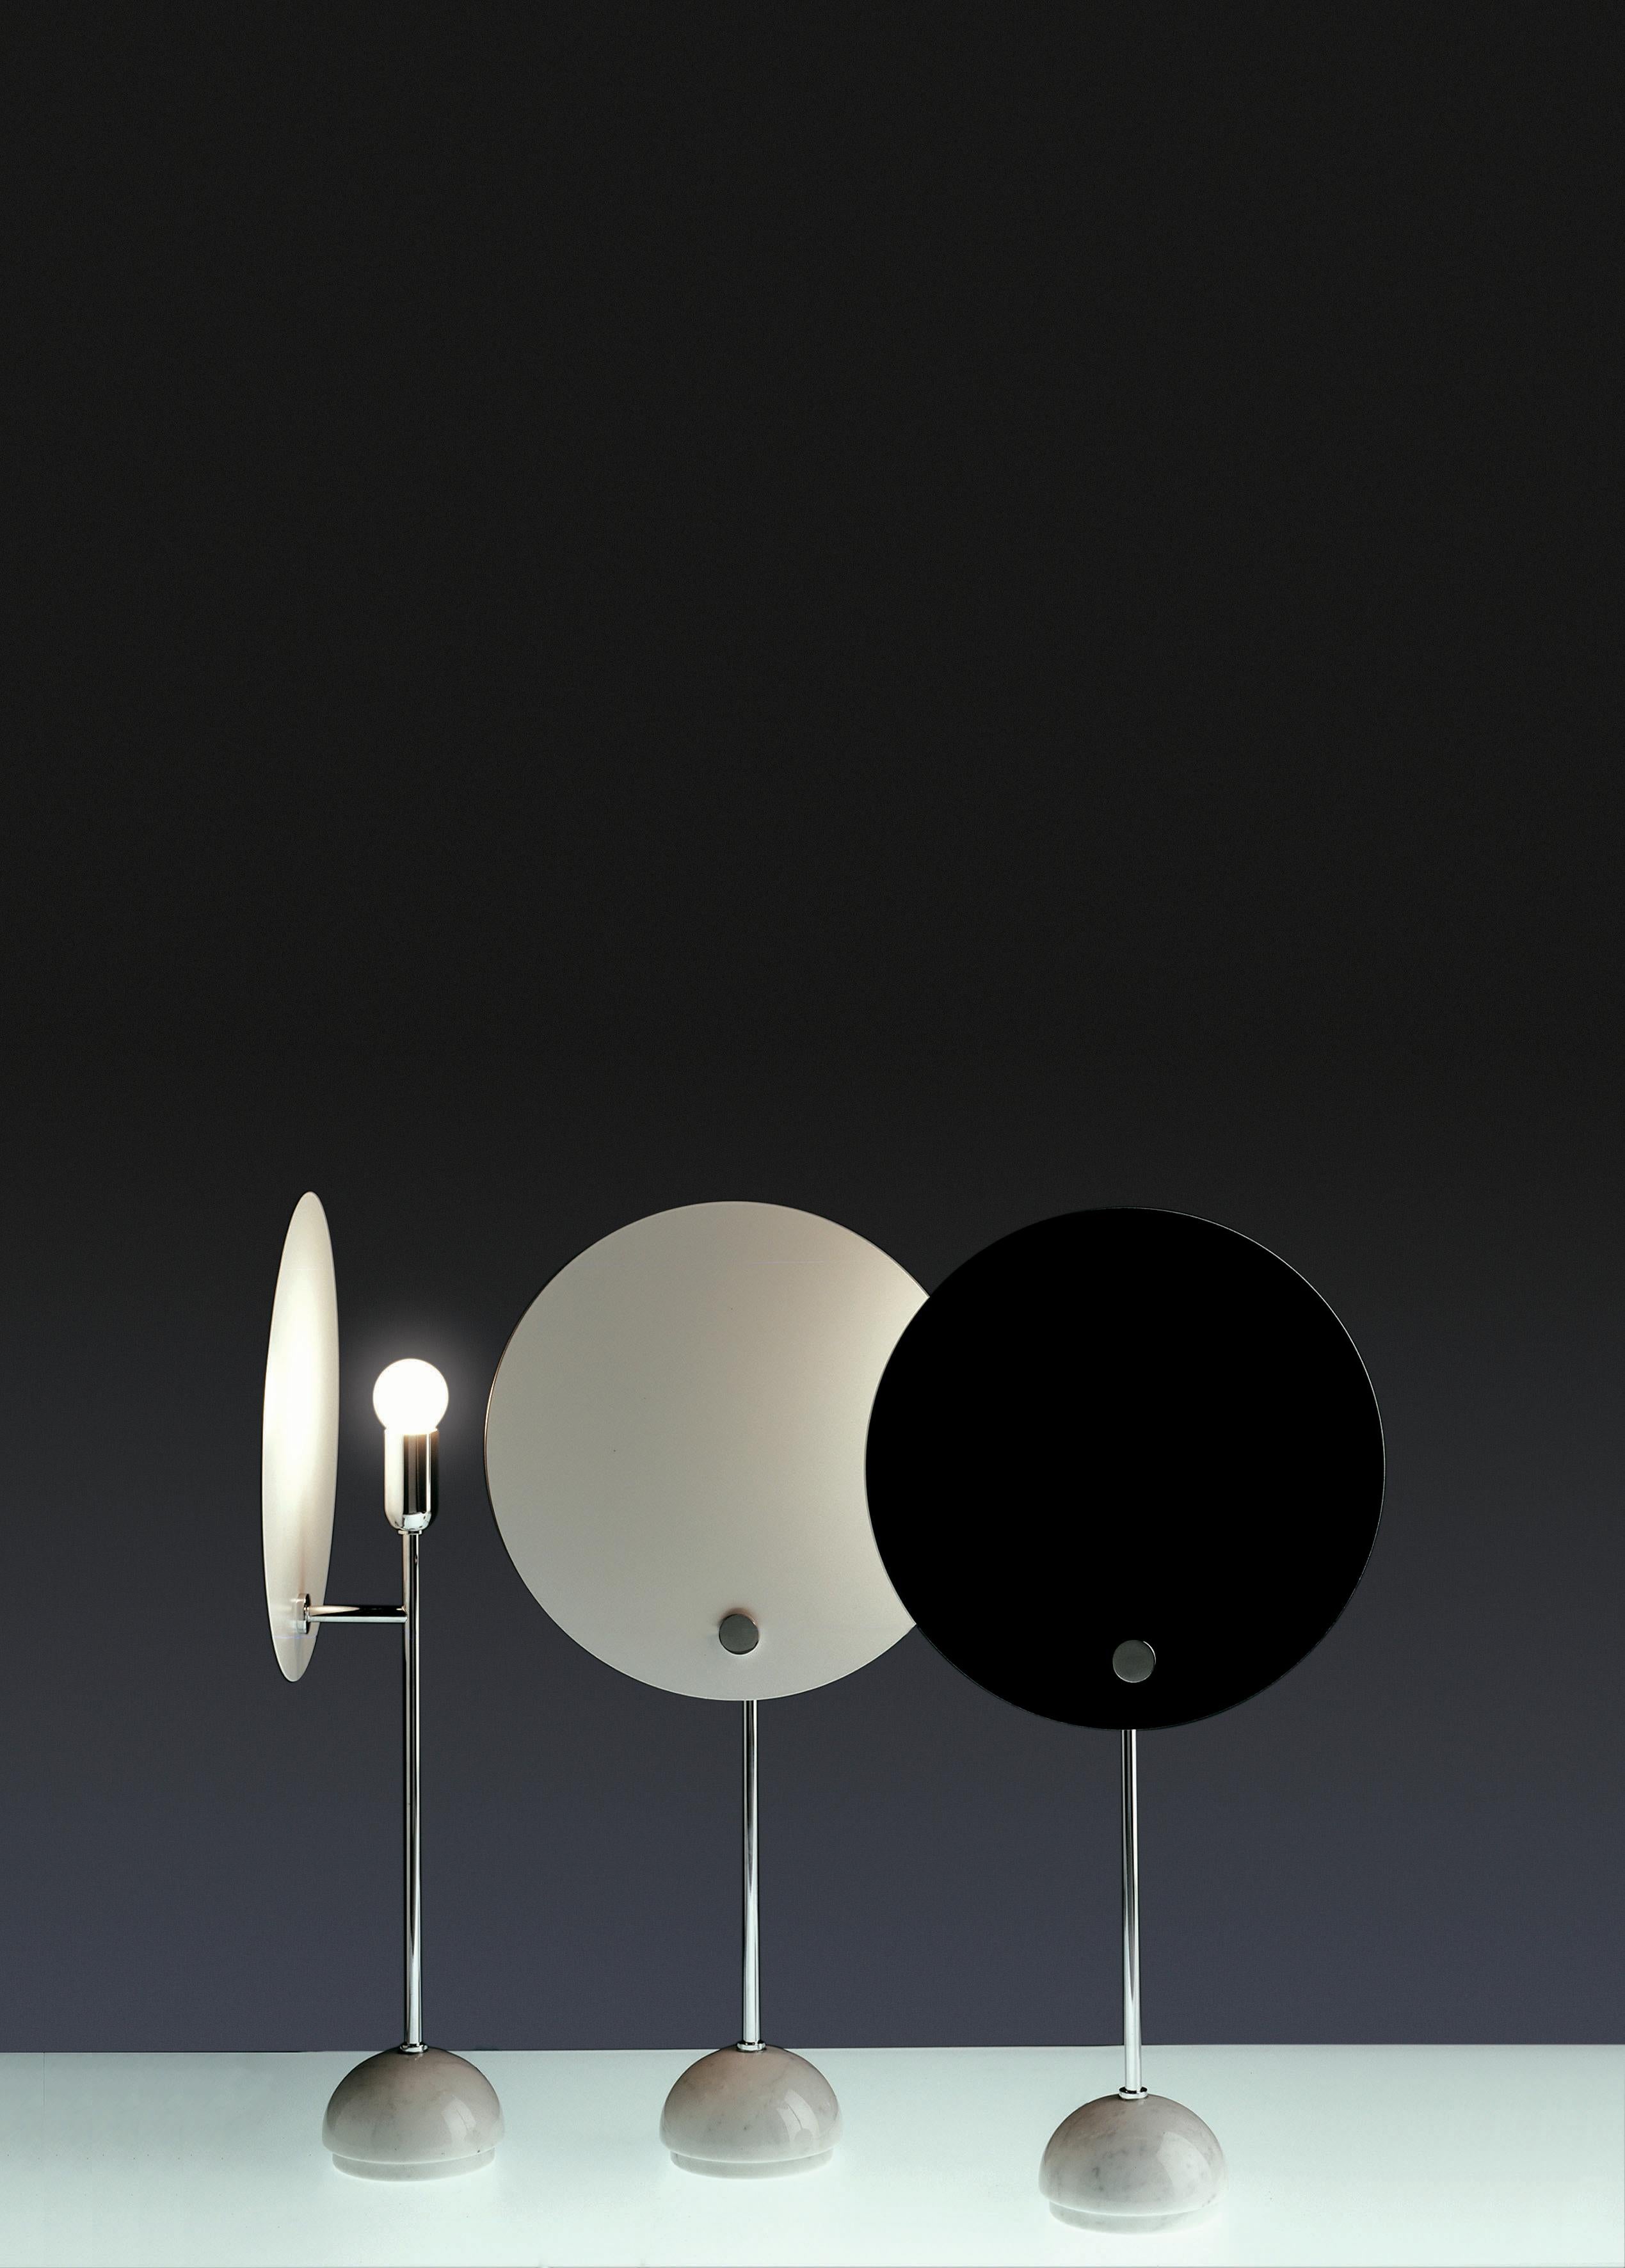 Lampe de table 'Kuta' de Vico Magistretti pour Nemo en noir.

Une lampe de table avec un réflecteur circulaire exécuté en aluminium, ce design astucieux donne l'effet d'une éclipse solaire. Présentant un écran circulaire peint en blanc ou en noir